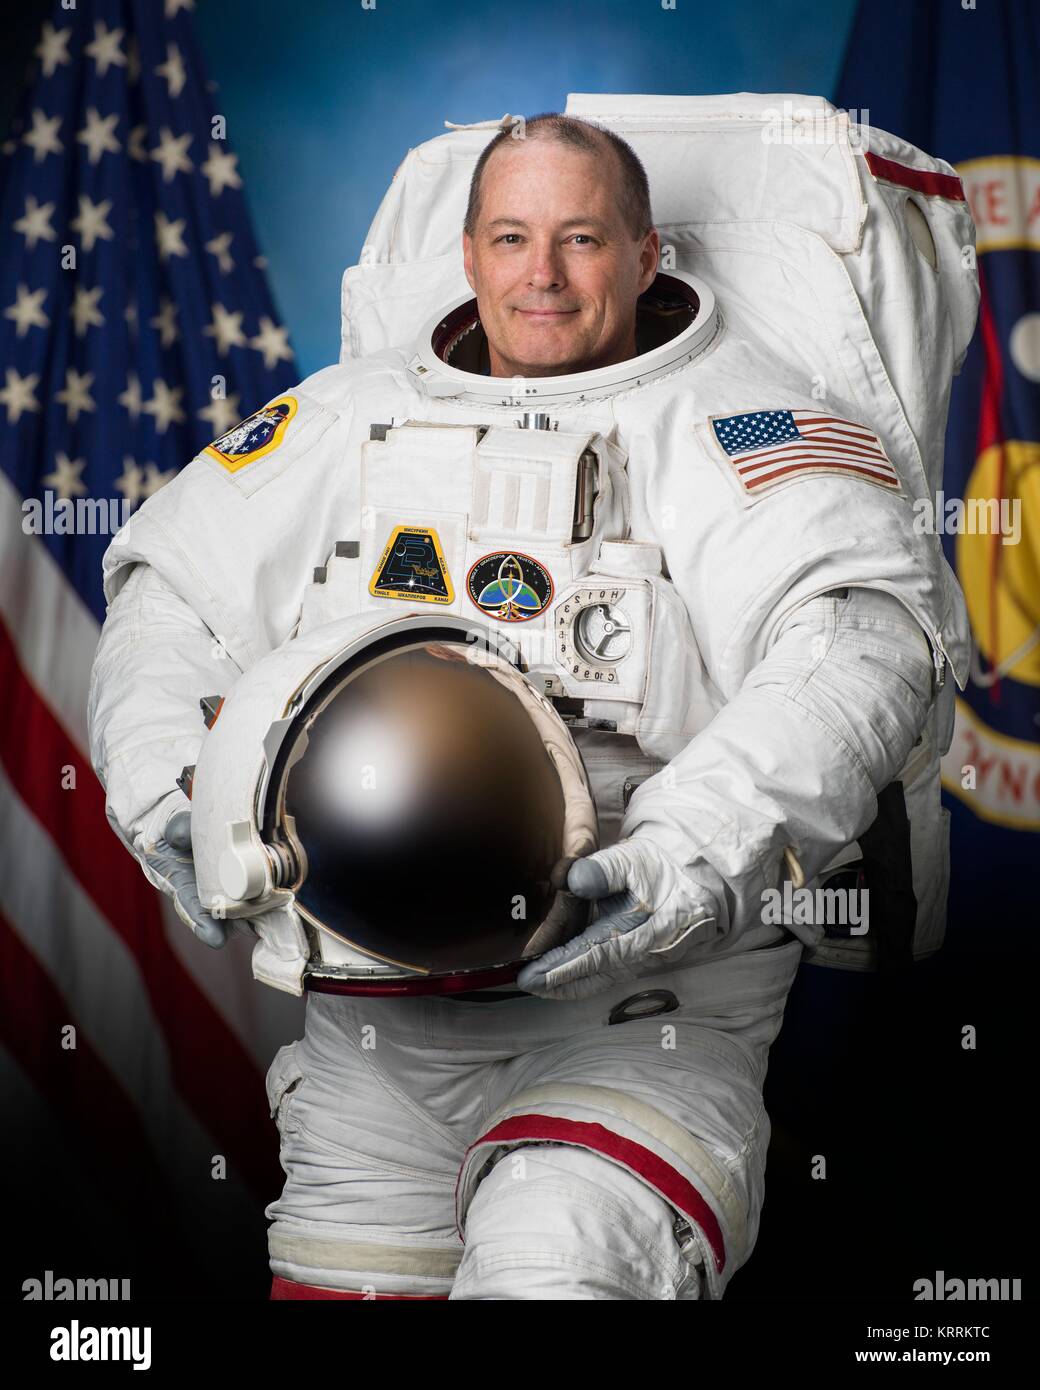 Houston Champ Texas Flag Astronaut Space City - Houston Space City  Astronaut | Art Board Print